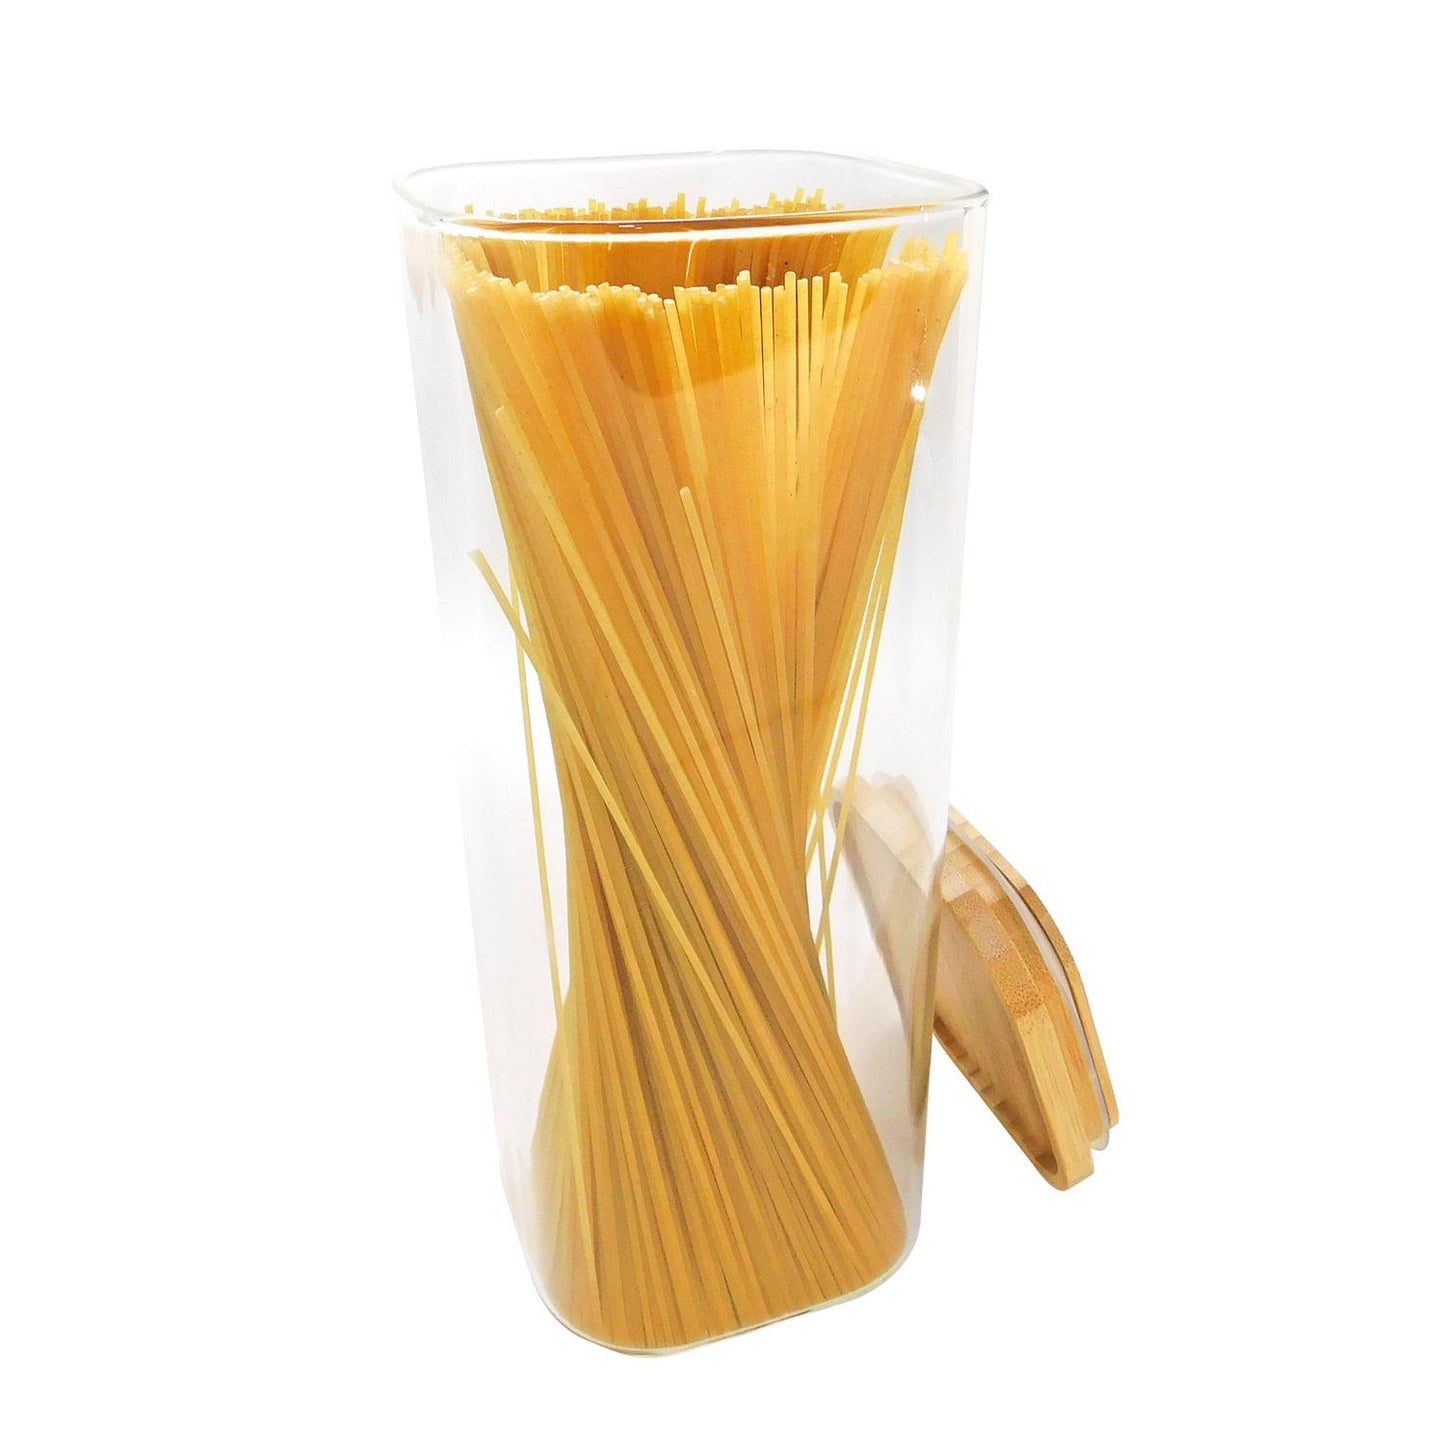 Recipiente con tapa hermética de bambú 1.9 L